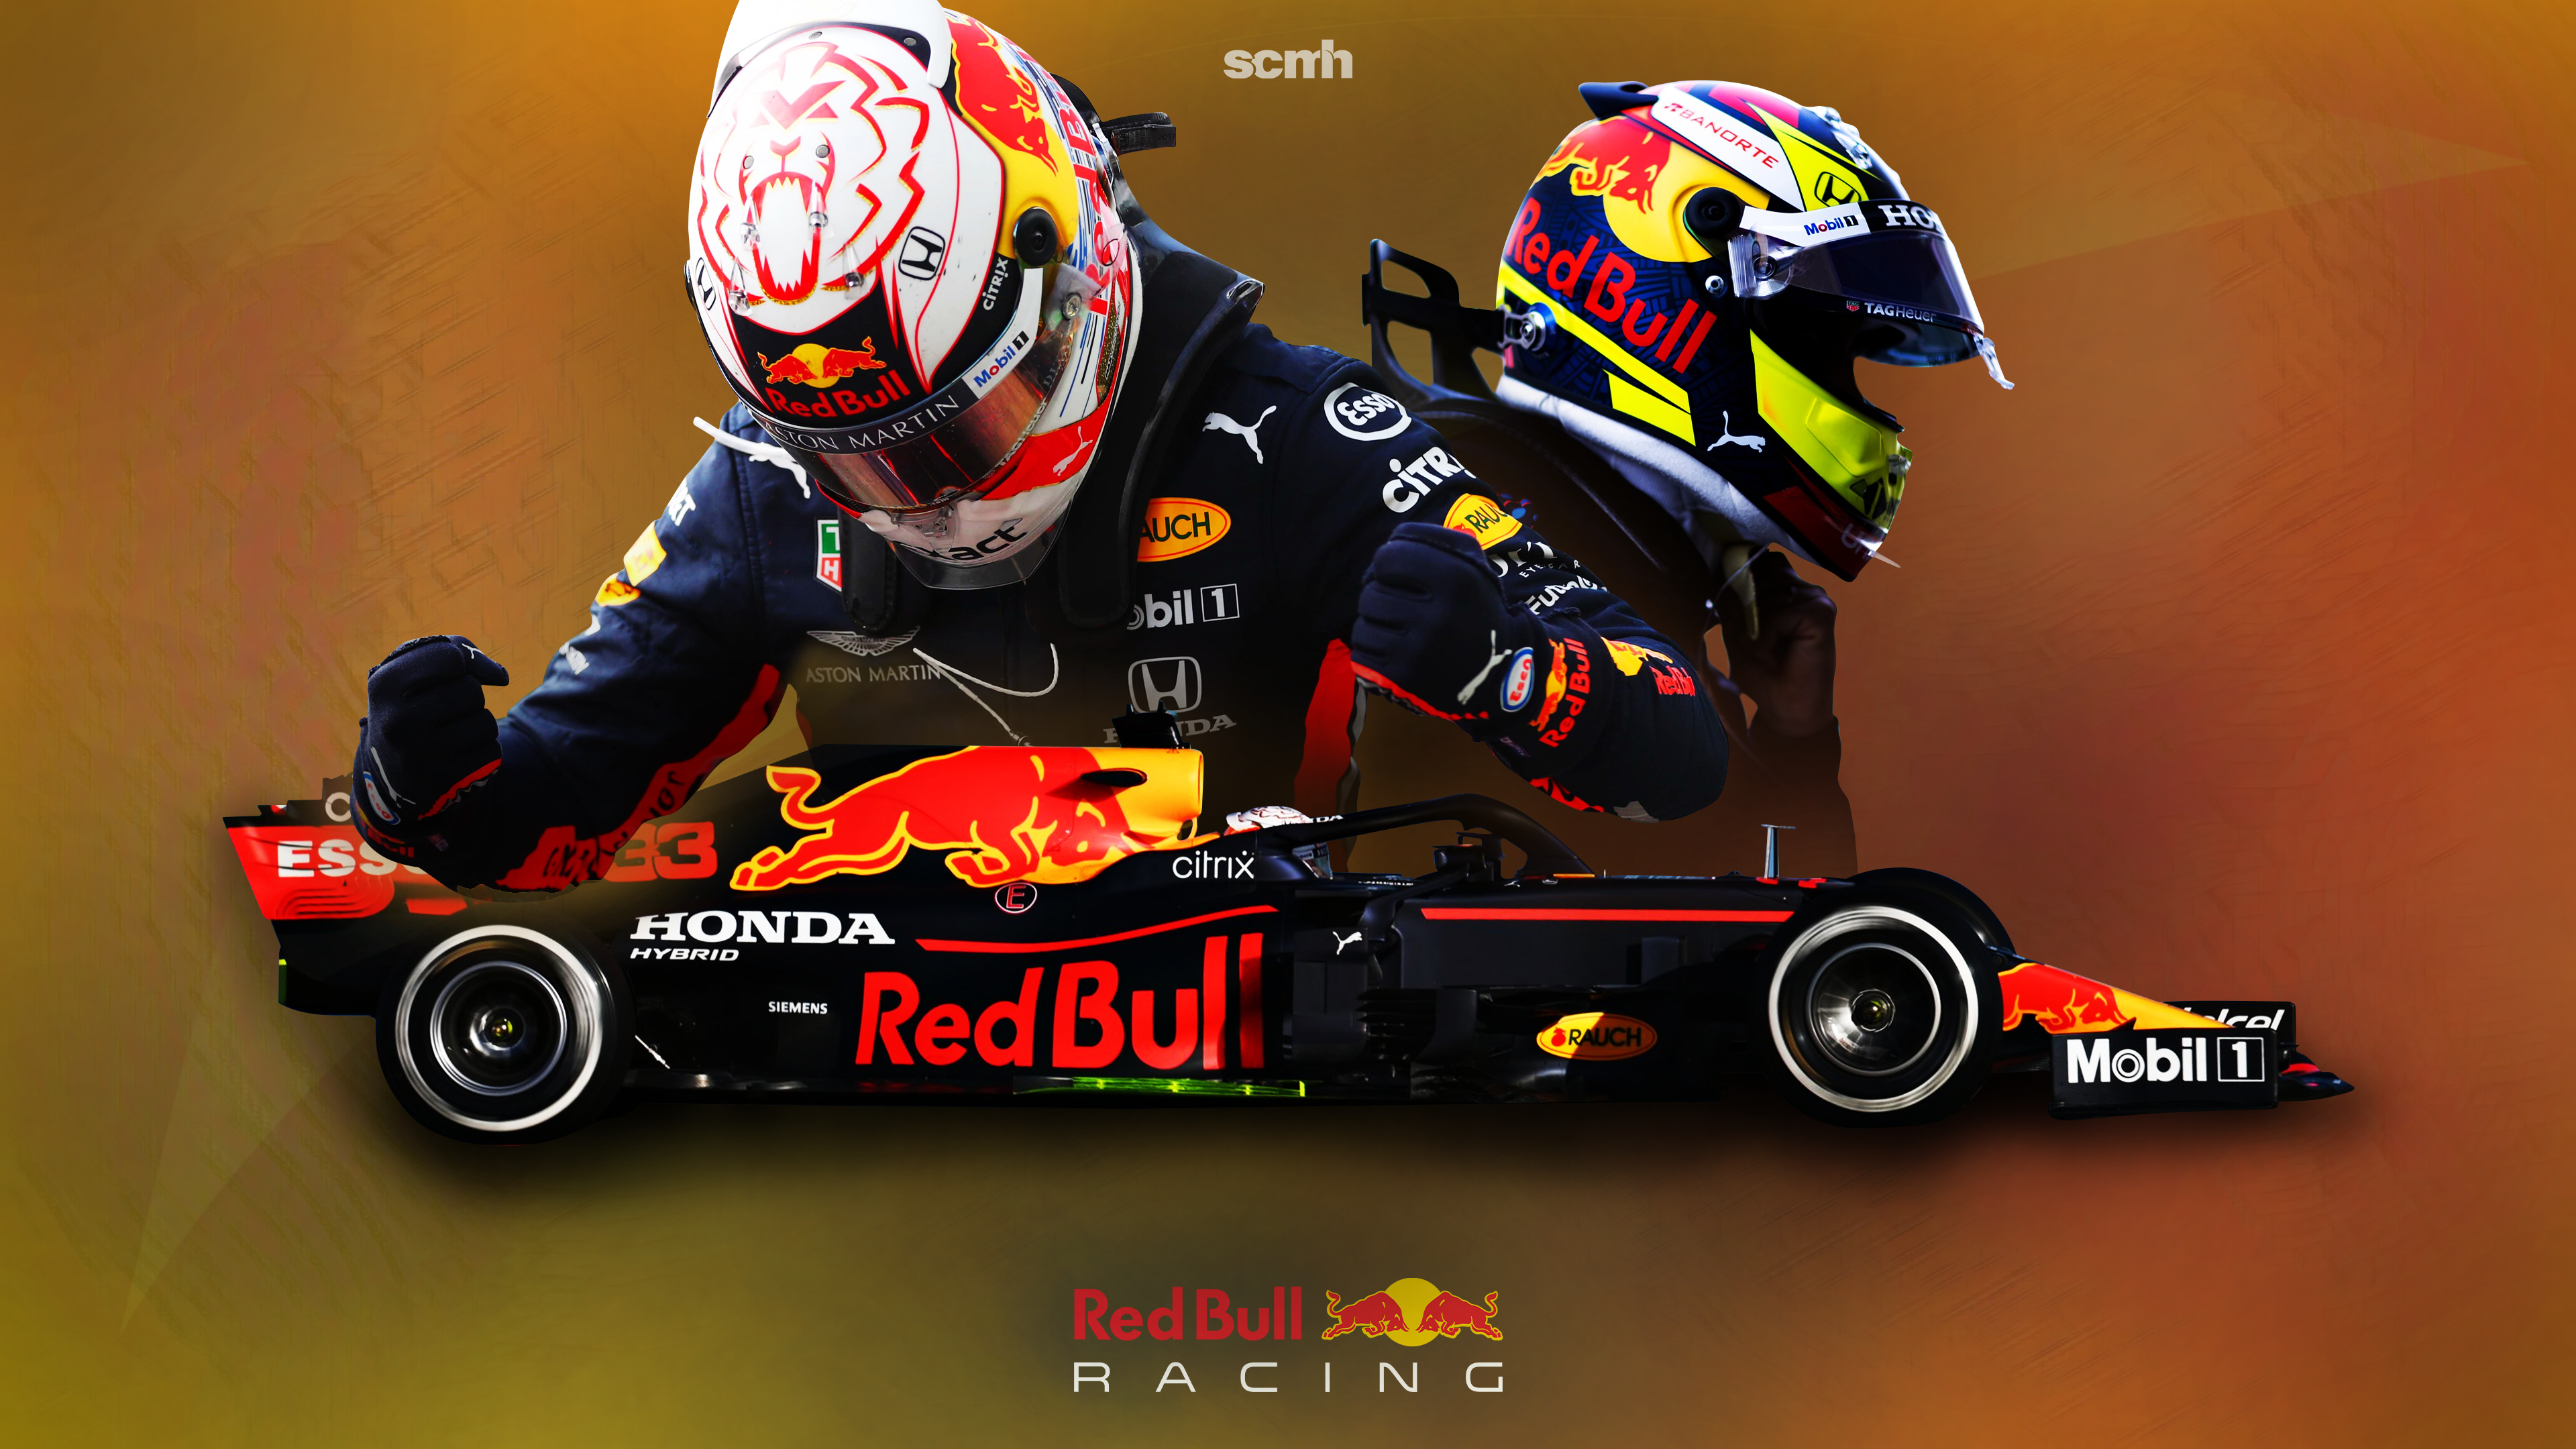 Red Bull Wallpaper for Desktop & Phone!